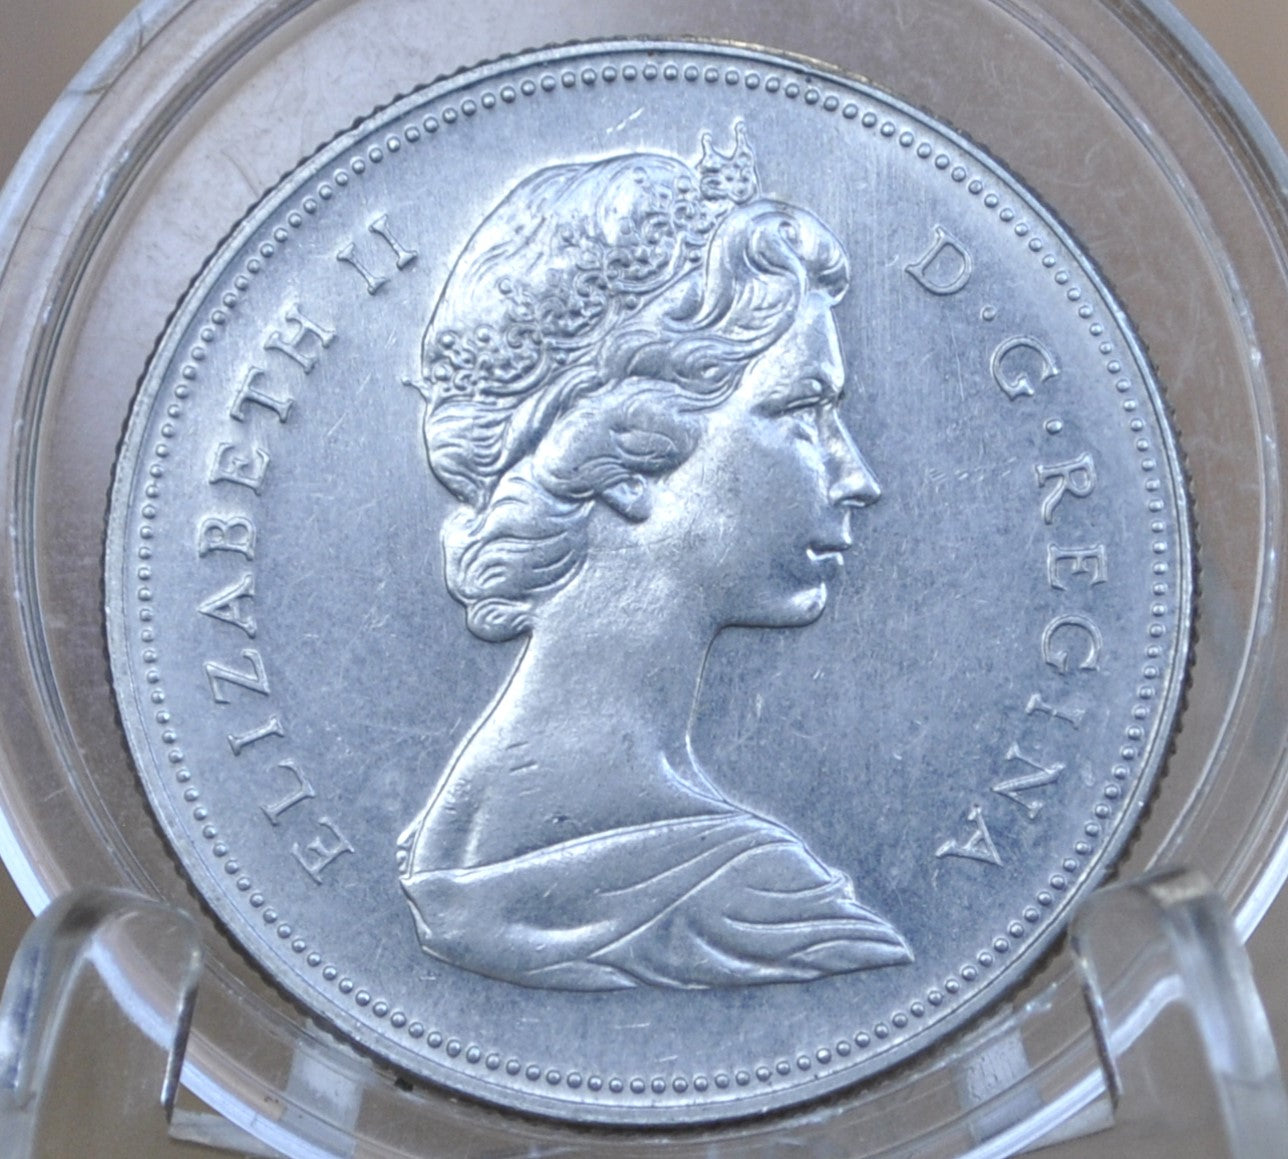 1975 Canadian Half Dollar - AU/BU (About Unc.) - Clad - 50 Cent Canada 1975